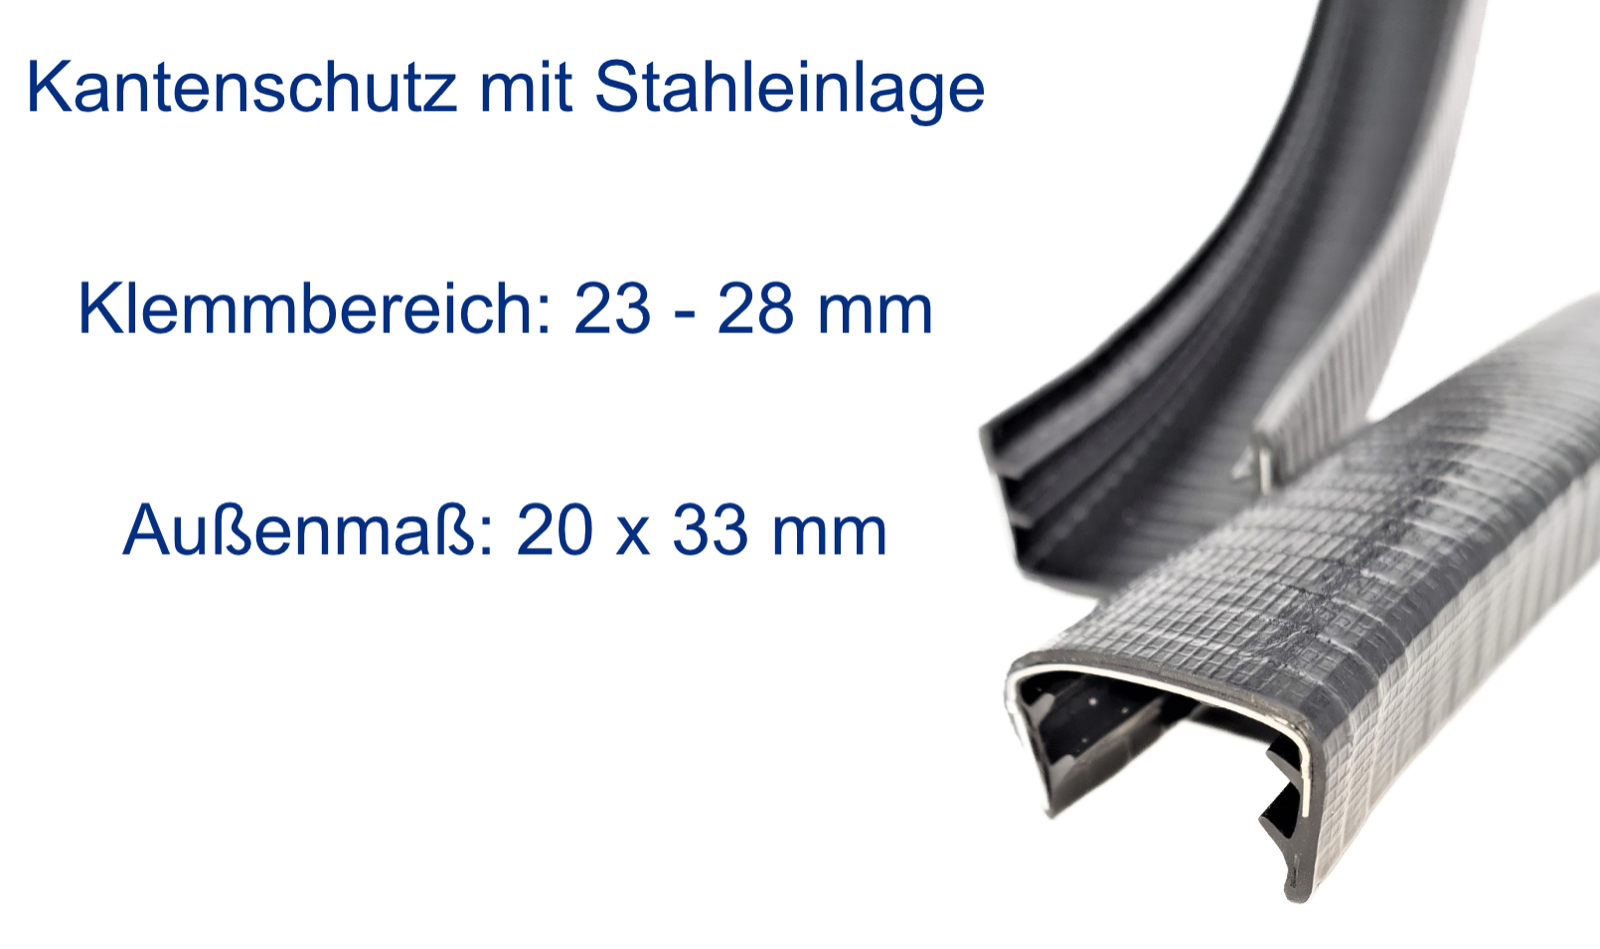 Kantenschutz mit Stahleinlage, Klemmbereich 23-28mm, Schwarz -  Kantenschutzprofil & Kederband